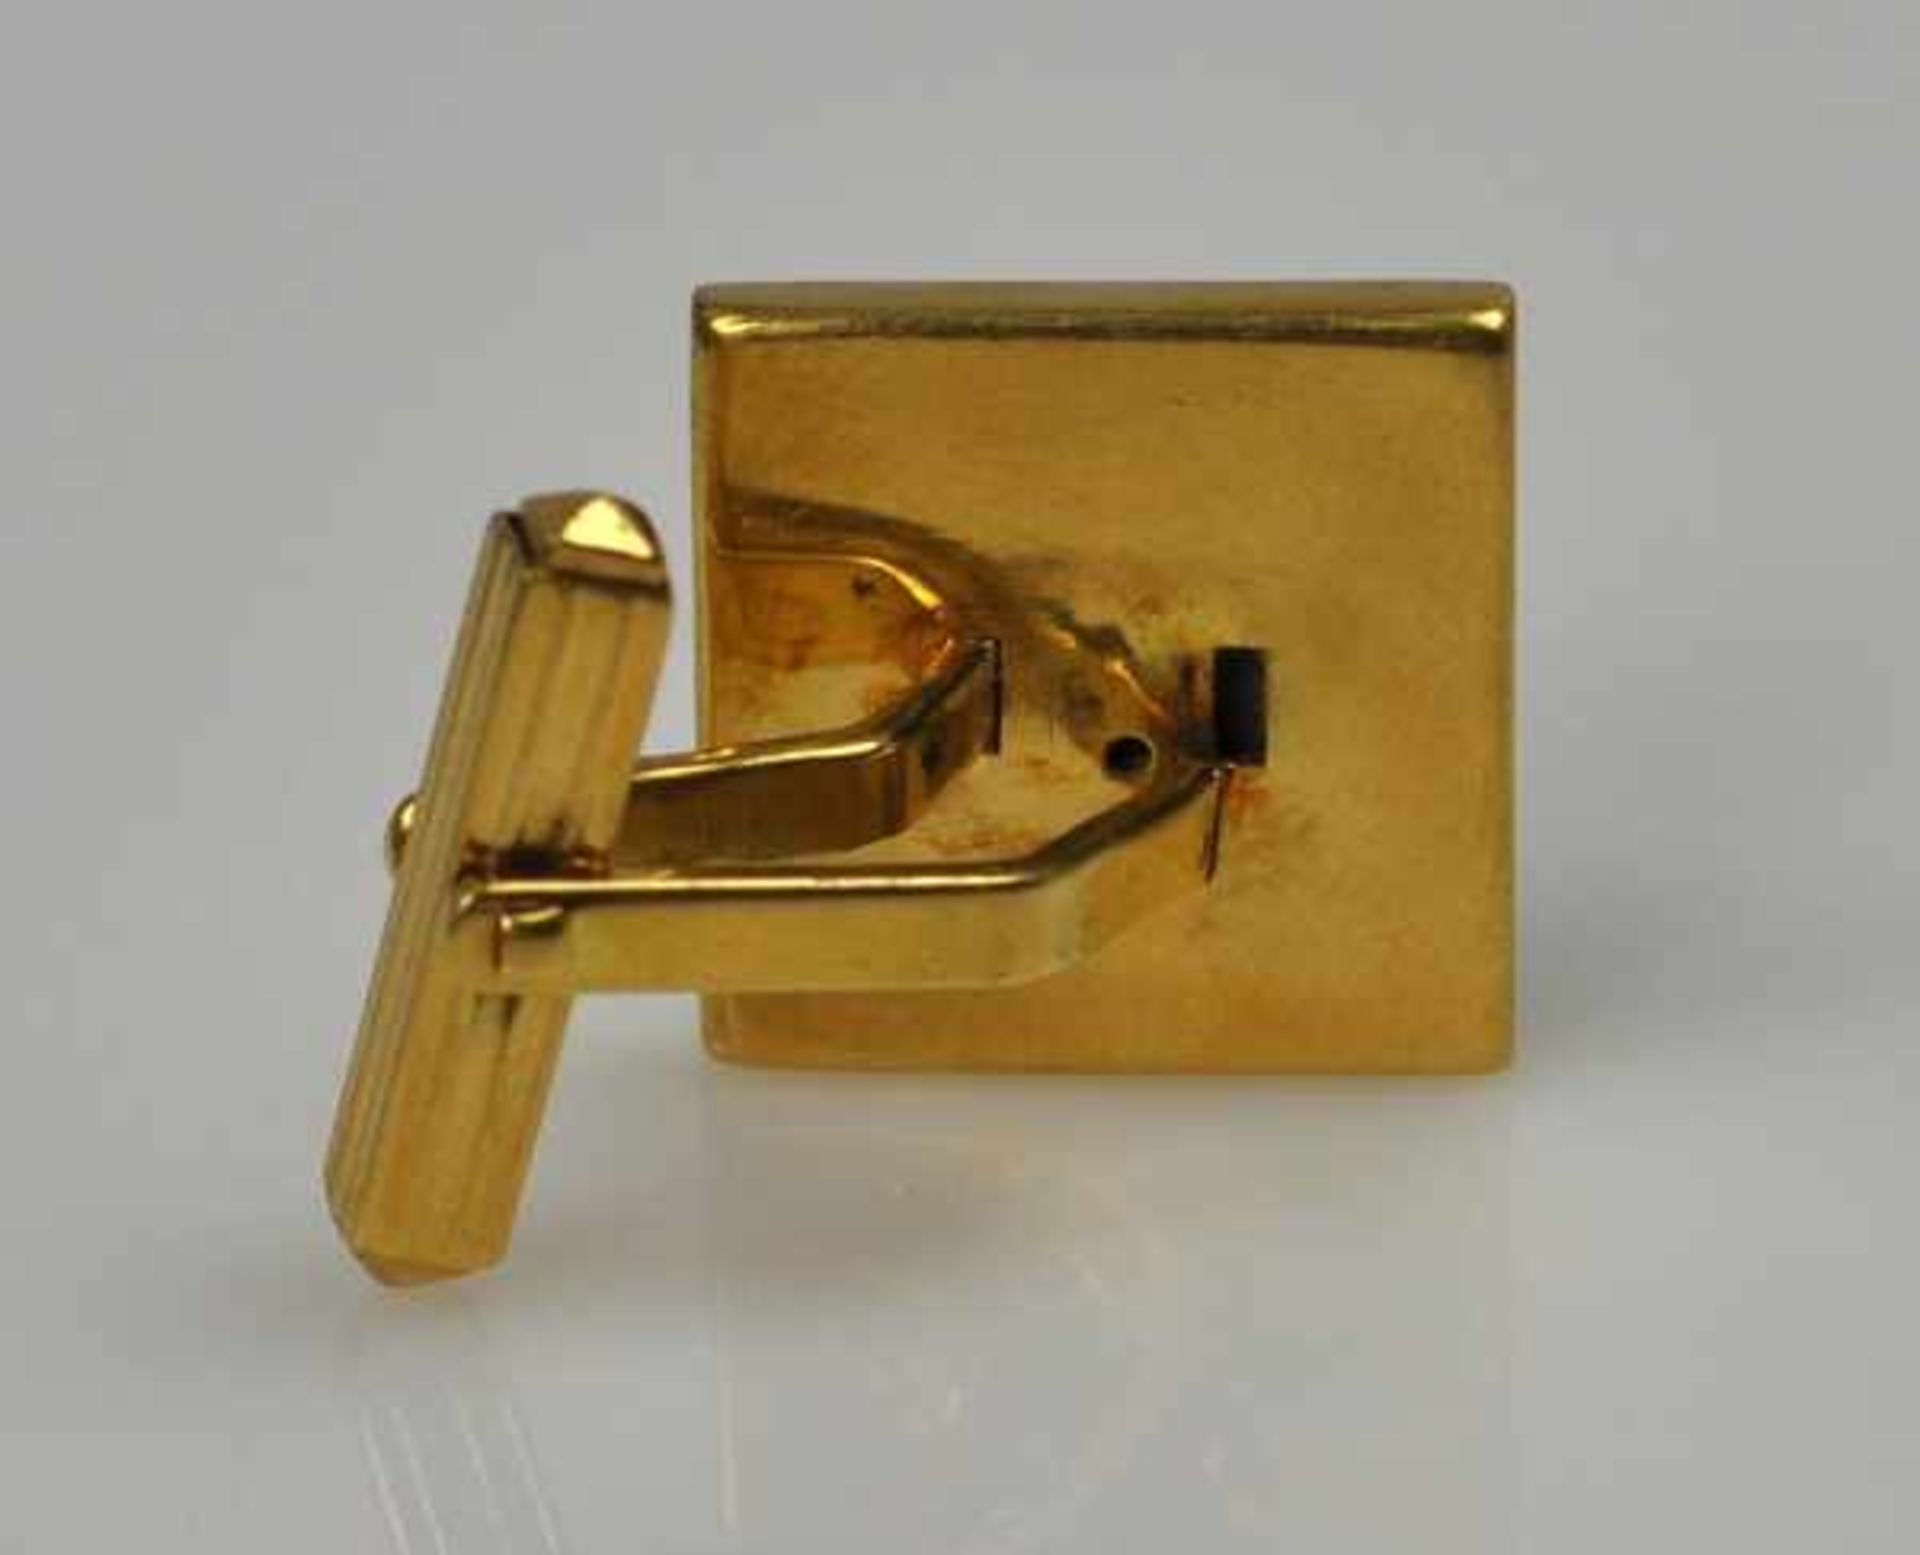 PAAR MANSCHETTENKNÖPFE viereckig, blaues Email mit eingelegten Goldelementen als Dekor, Gelbgold - Image 2 of 3